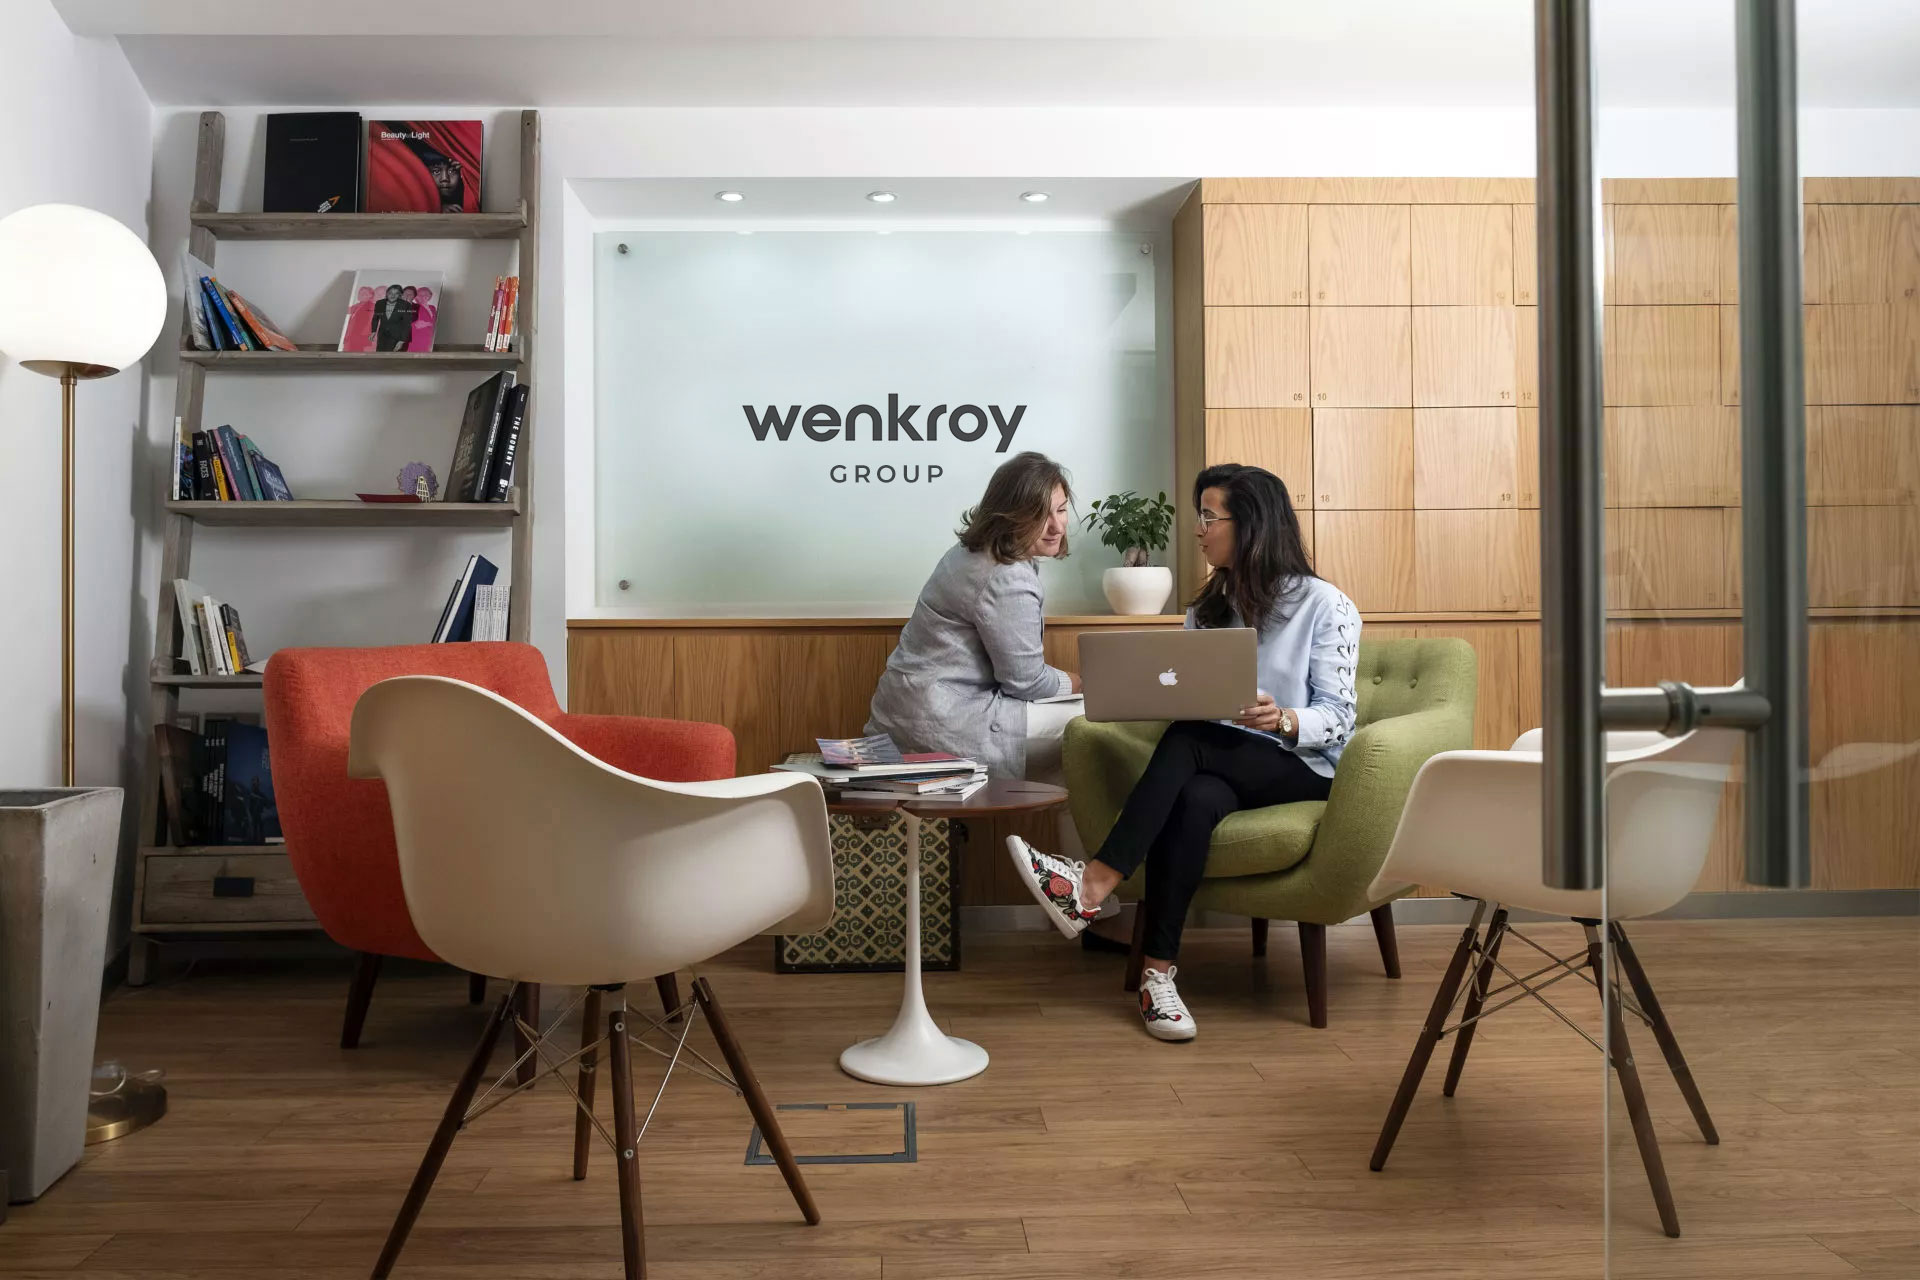 Wenkroy Digital office building in New York City